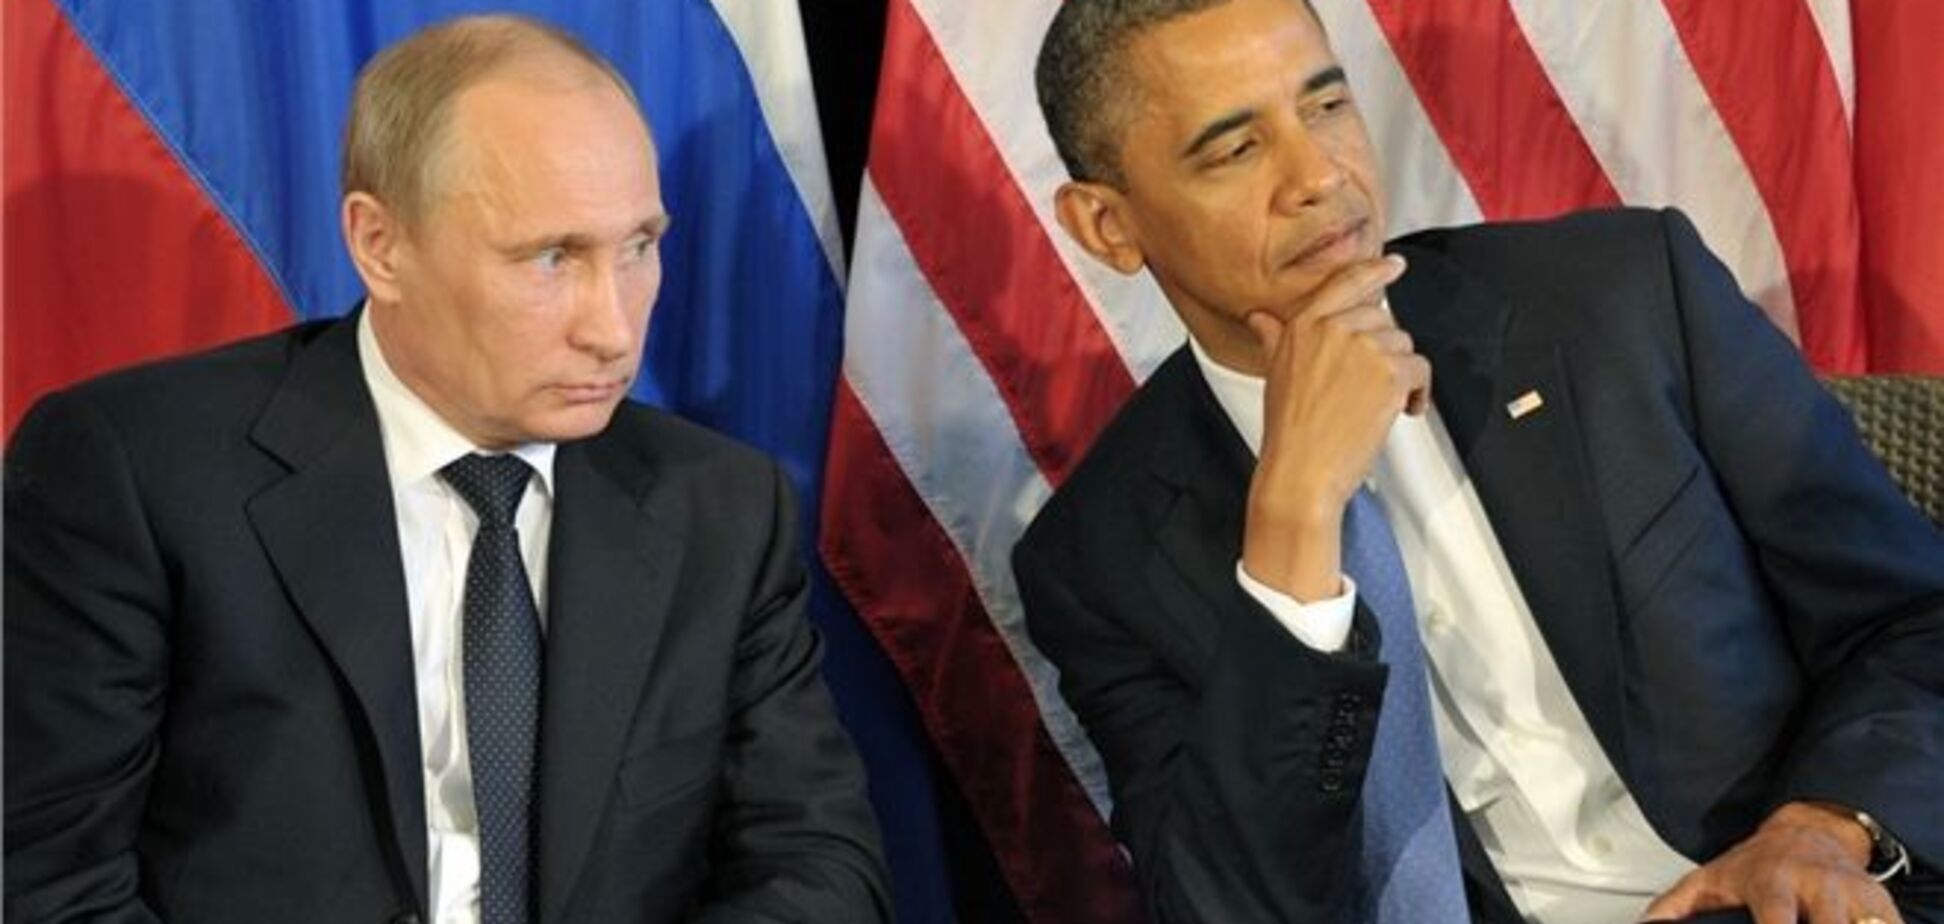 Итог переговоров Путина и Обамы по Сирии: каждый остался при своем мнении